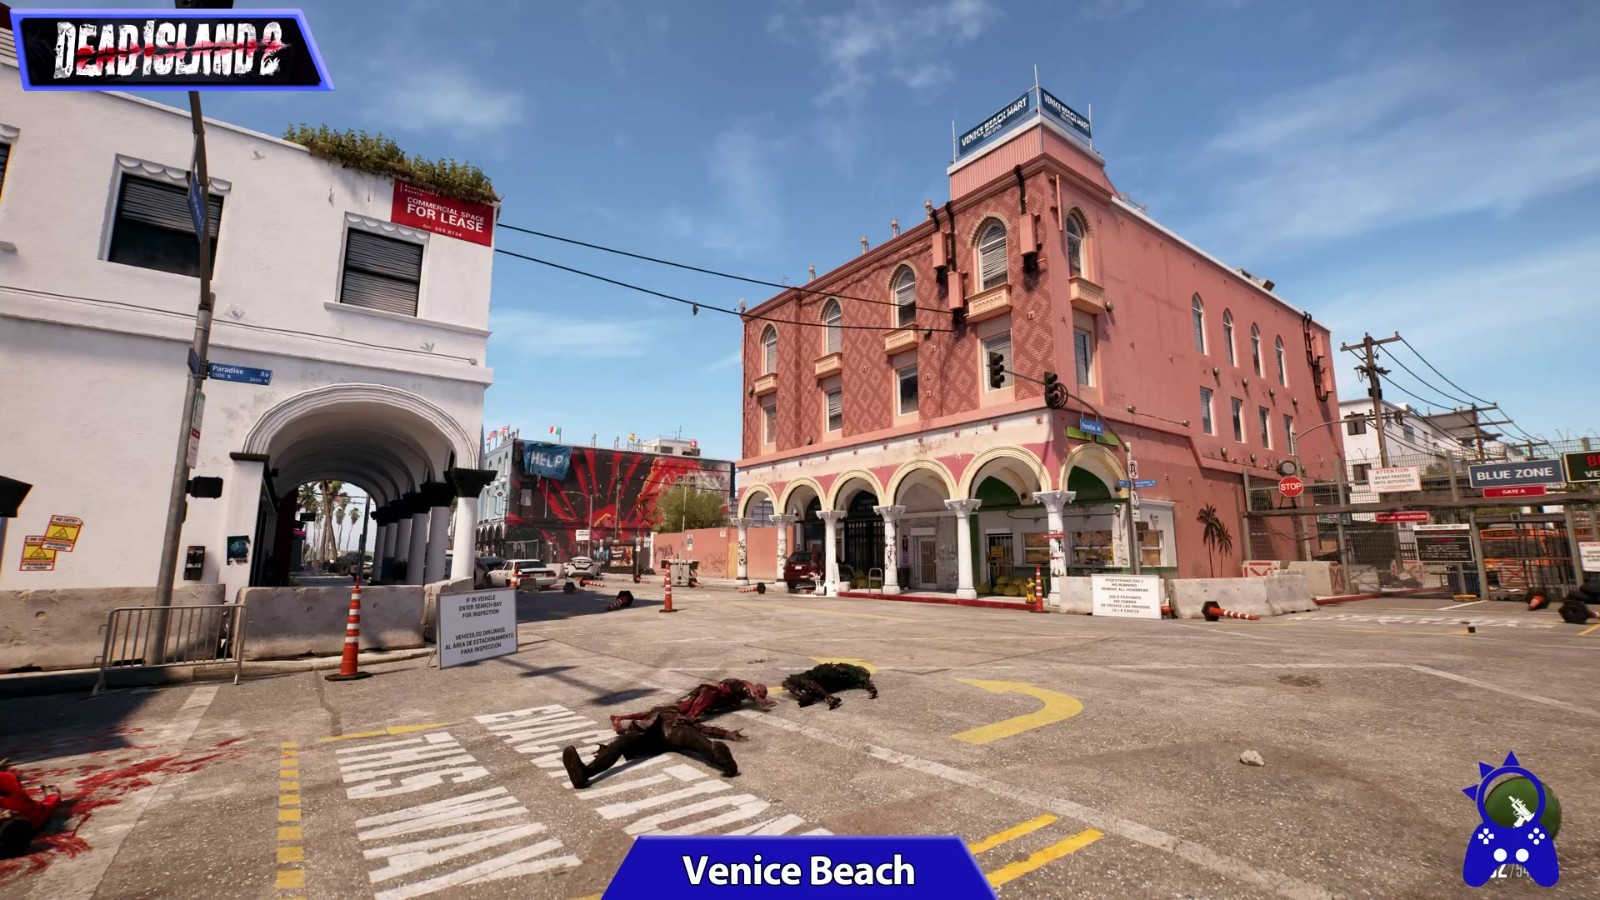 《死亡島2》遊戲環境與現實環境視頻對比